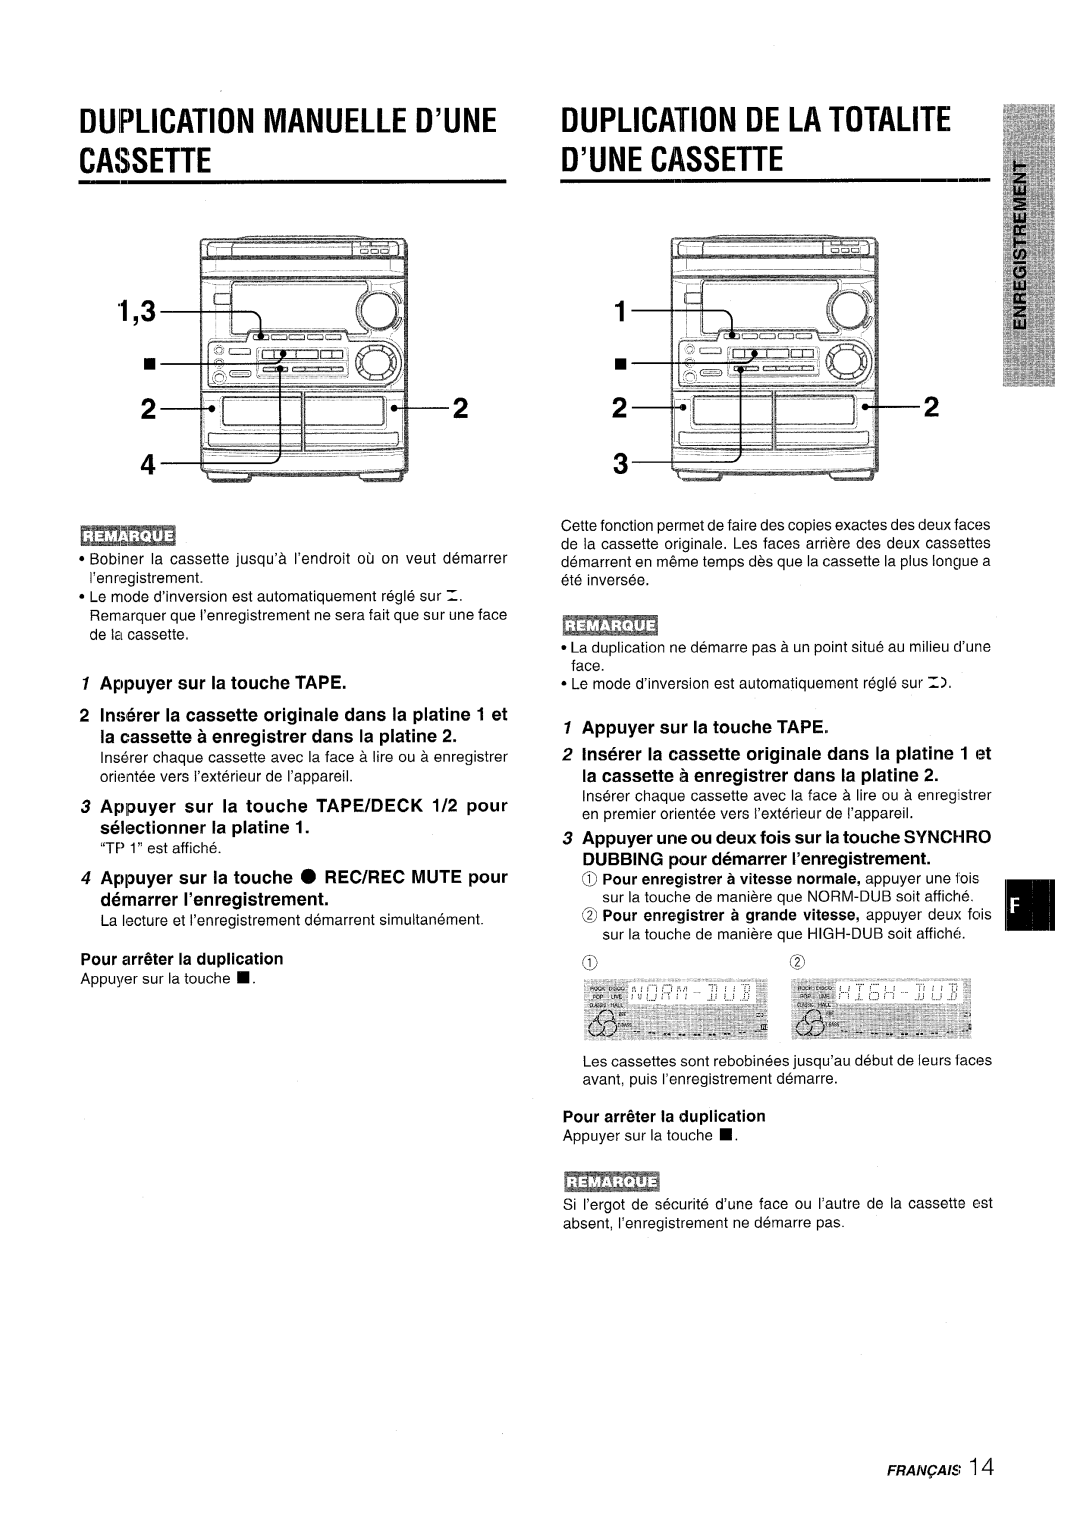 Aiwa CX-NMT50 Duplication Manuelle D’Une Duplication De La Totalite, ‘1,3, D’Une Cassette, Appuyer sur la touche TAPE 